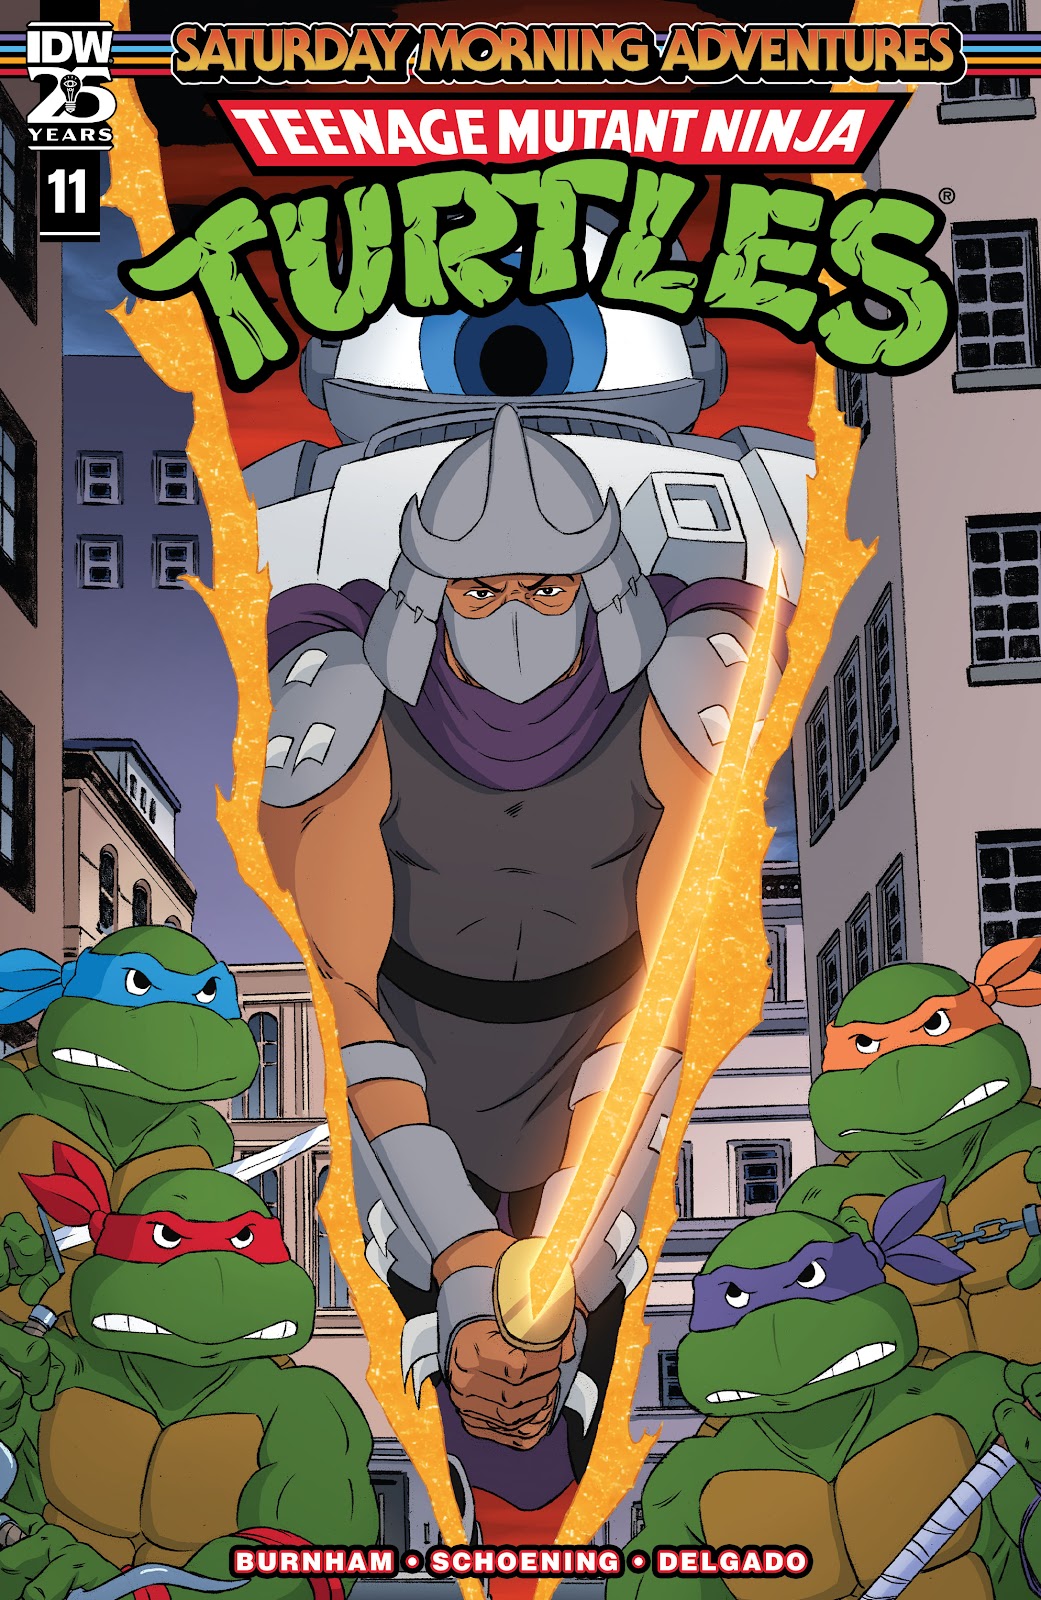 Teenage Mutant Ninja Turtles: Saturday Morning Adventures Continued issue 11 - Page 1